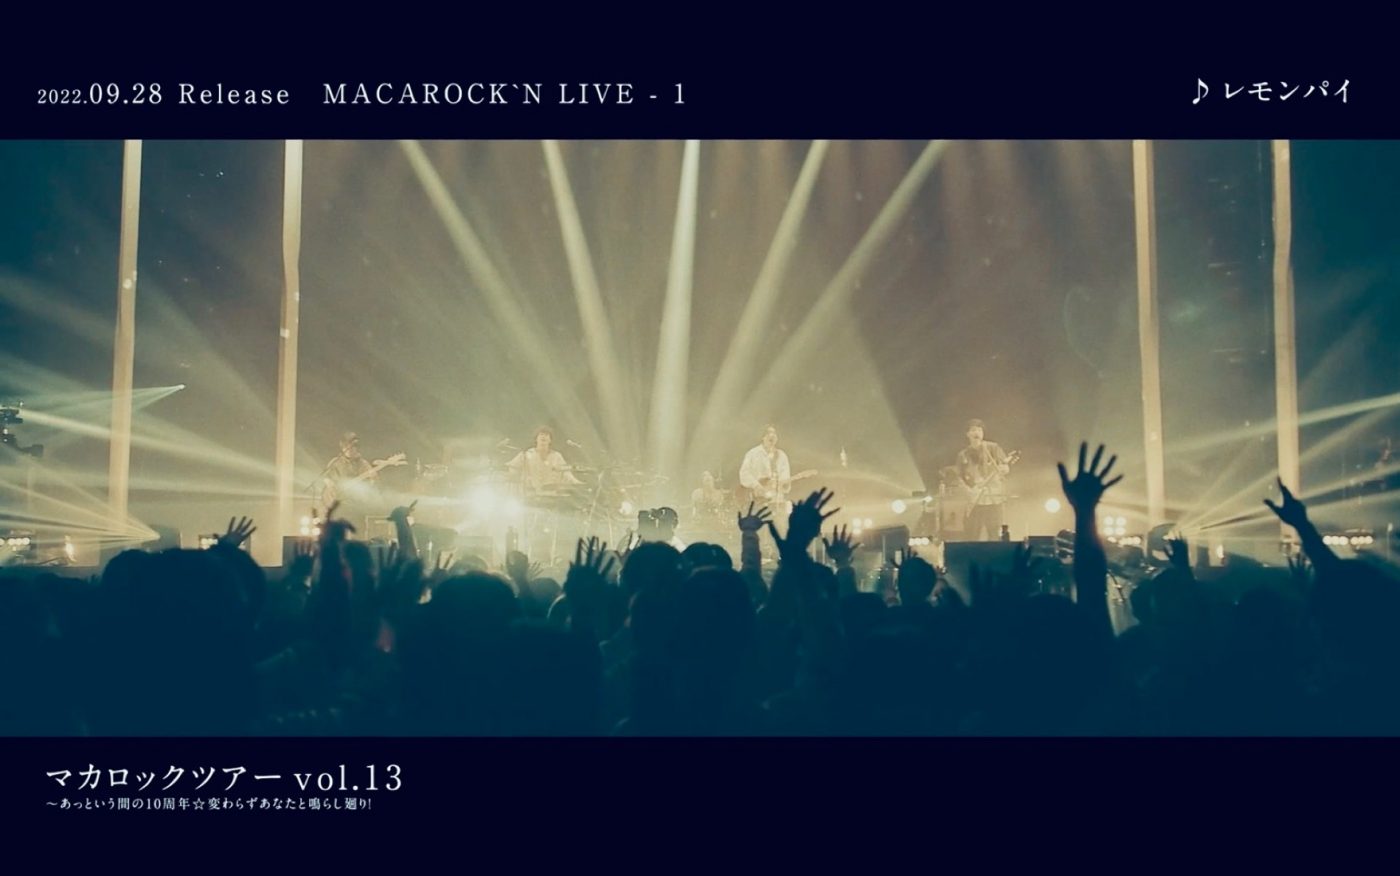 マカロニえんぴつ、初のライブ映像集『MACAROCK'N LIVE-1』より